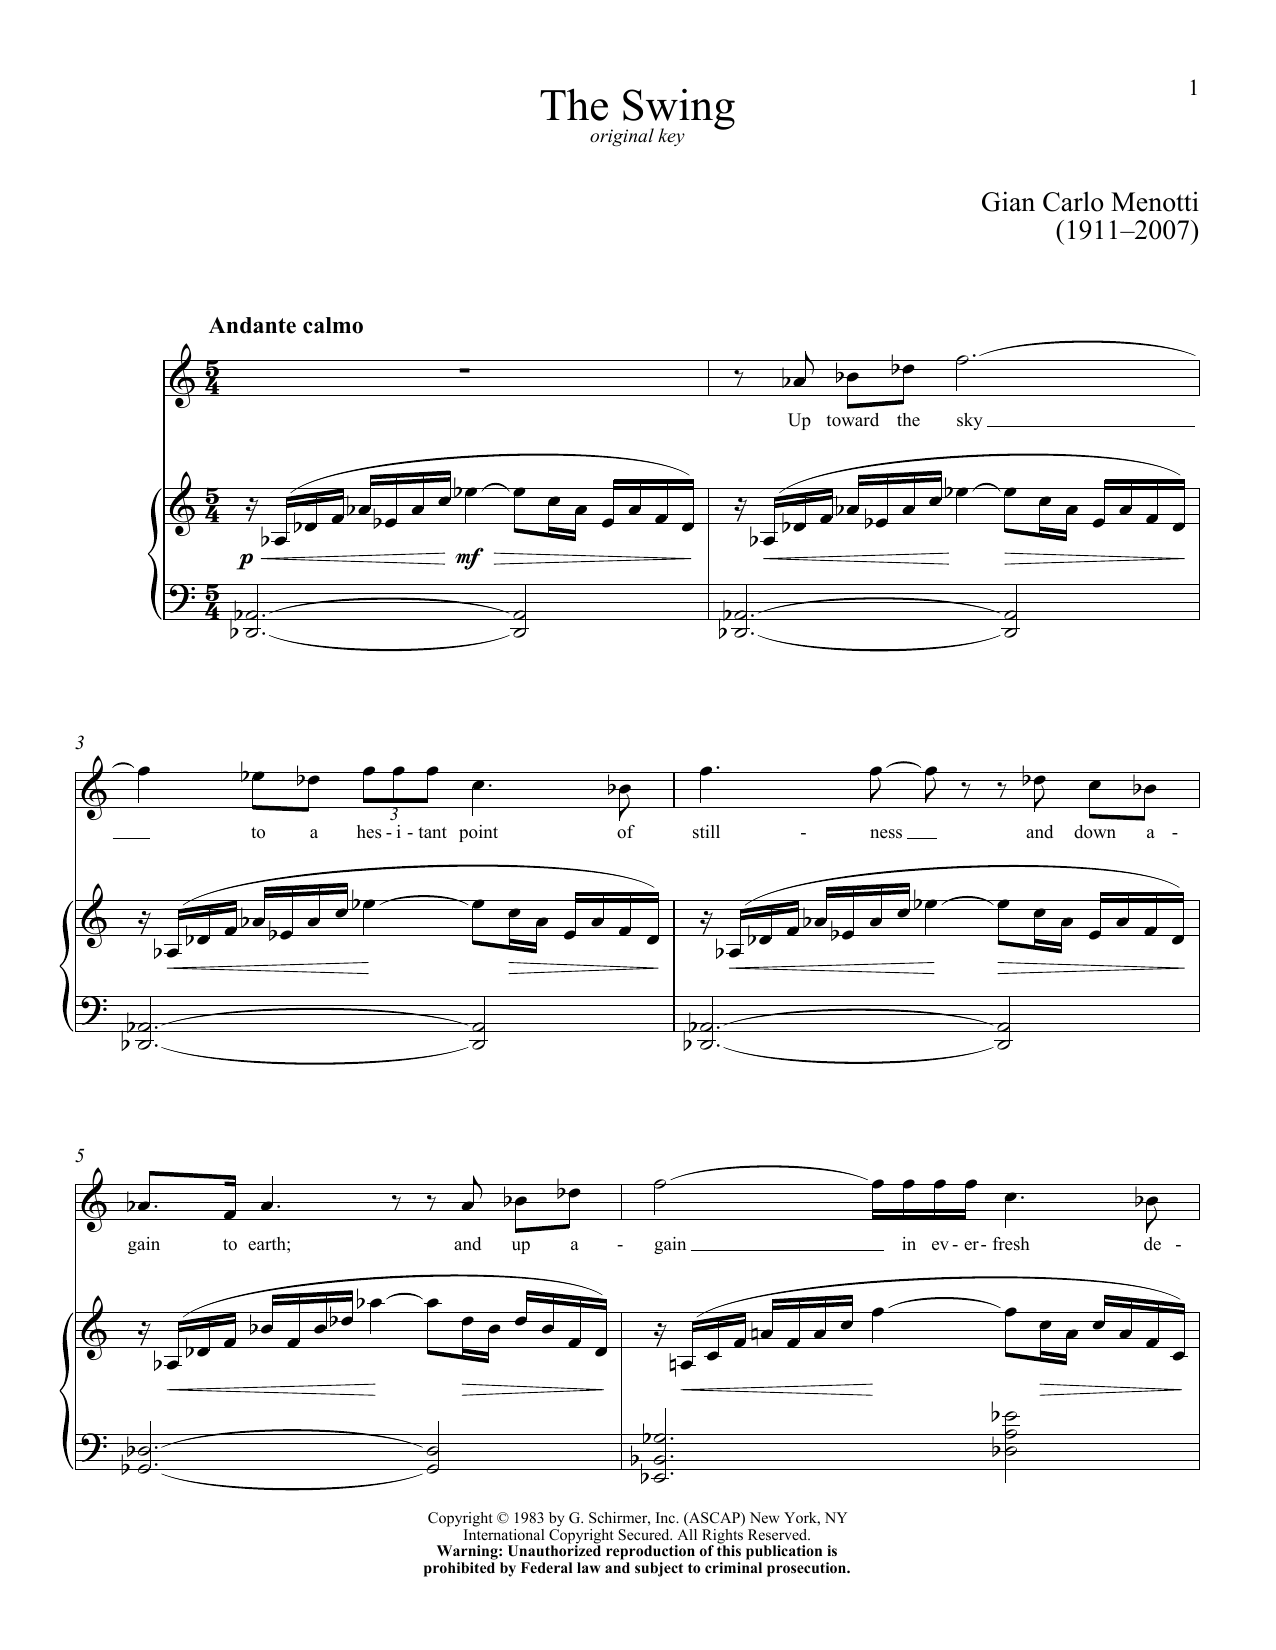 Download Gian Carlo Menotti The Swing Sheet Music